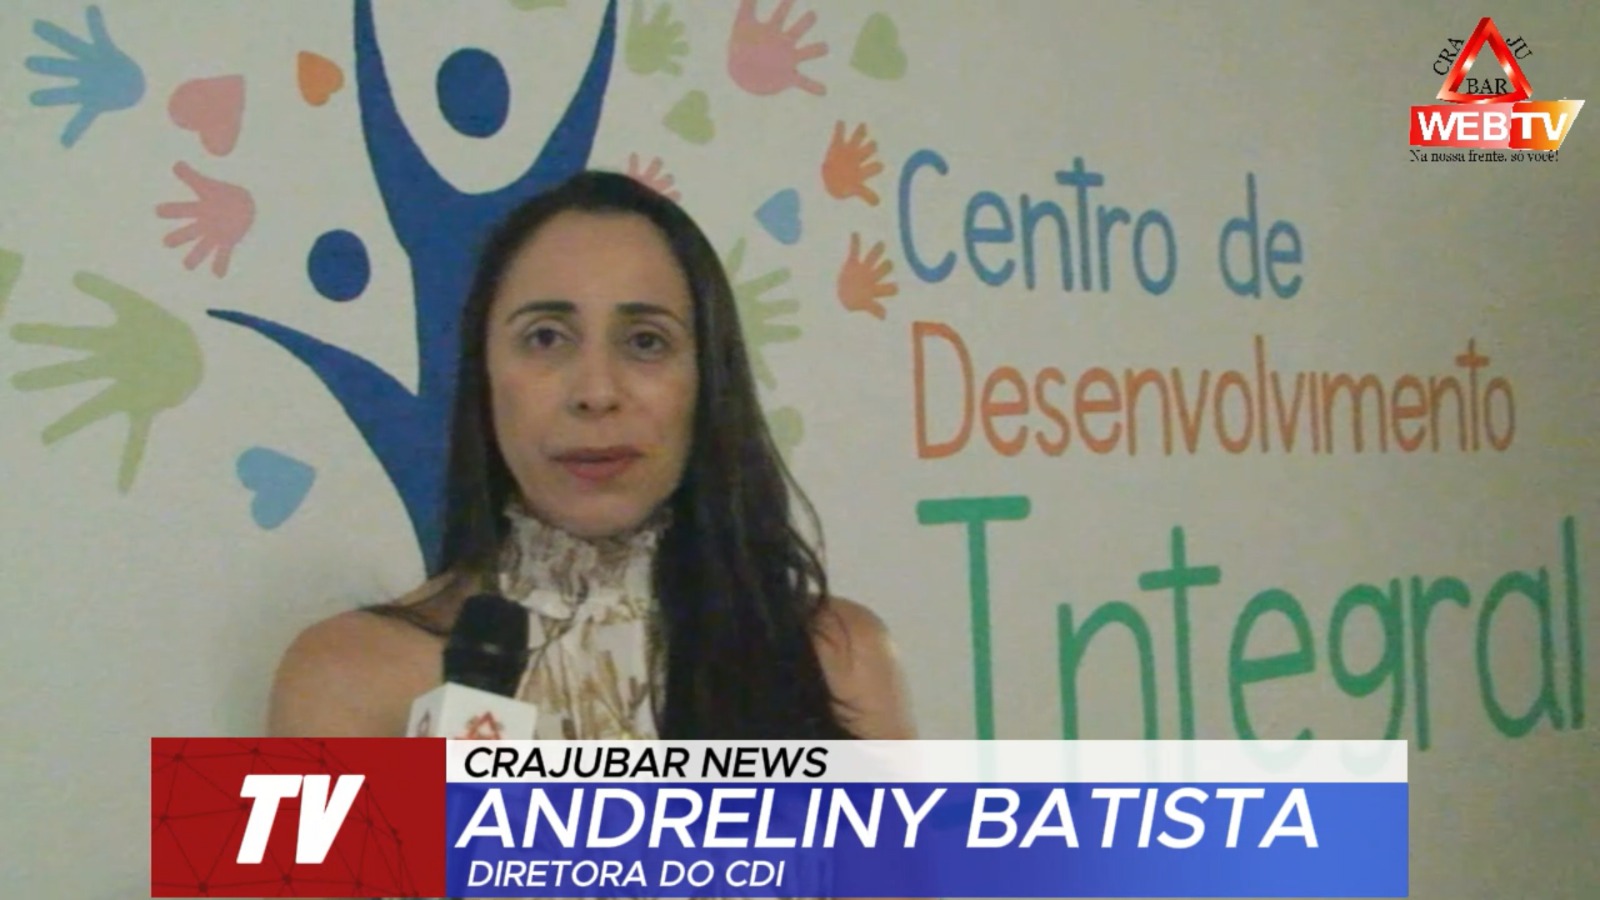 A diretora do CDI, Andreliny Batista fala do Centro de Desenvolvimento Integral.